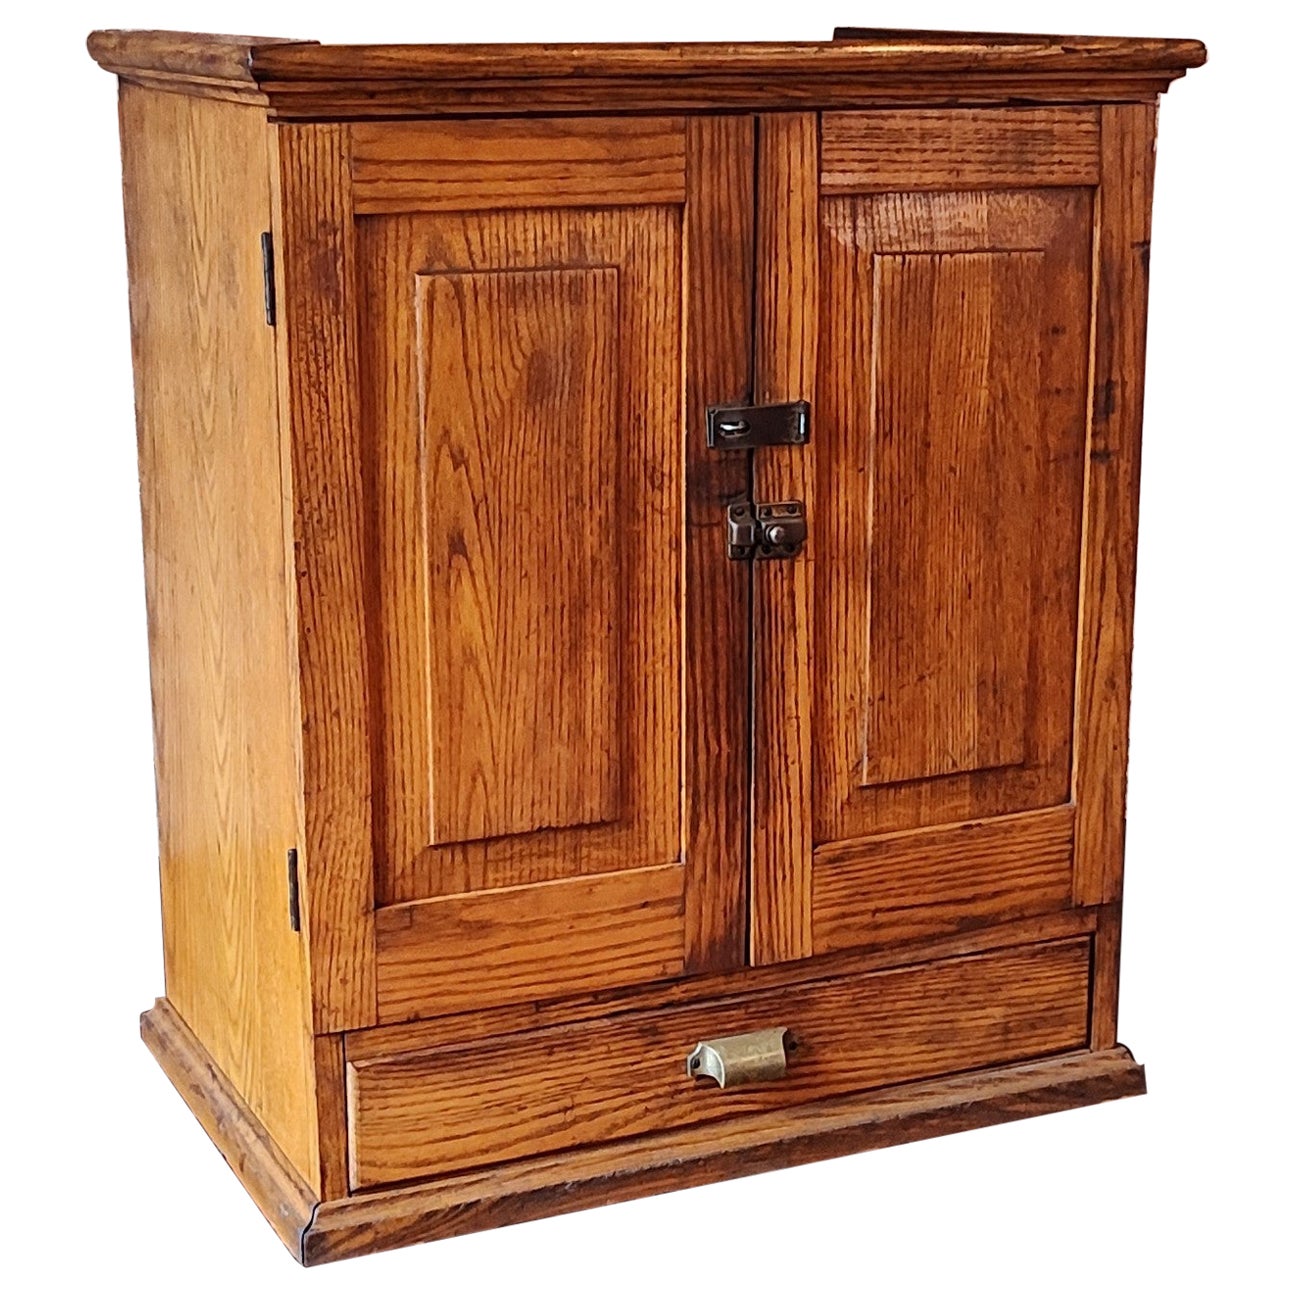 Vintage Industrial Wooden Cabinet For Sale